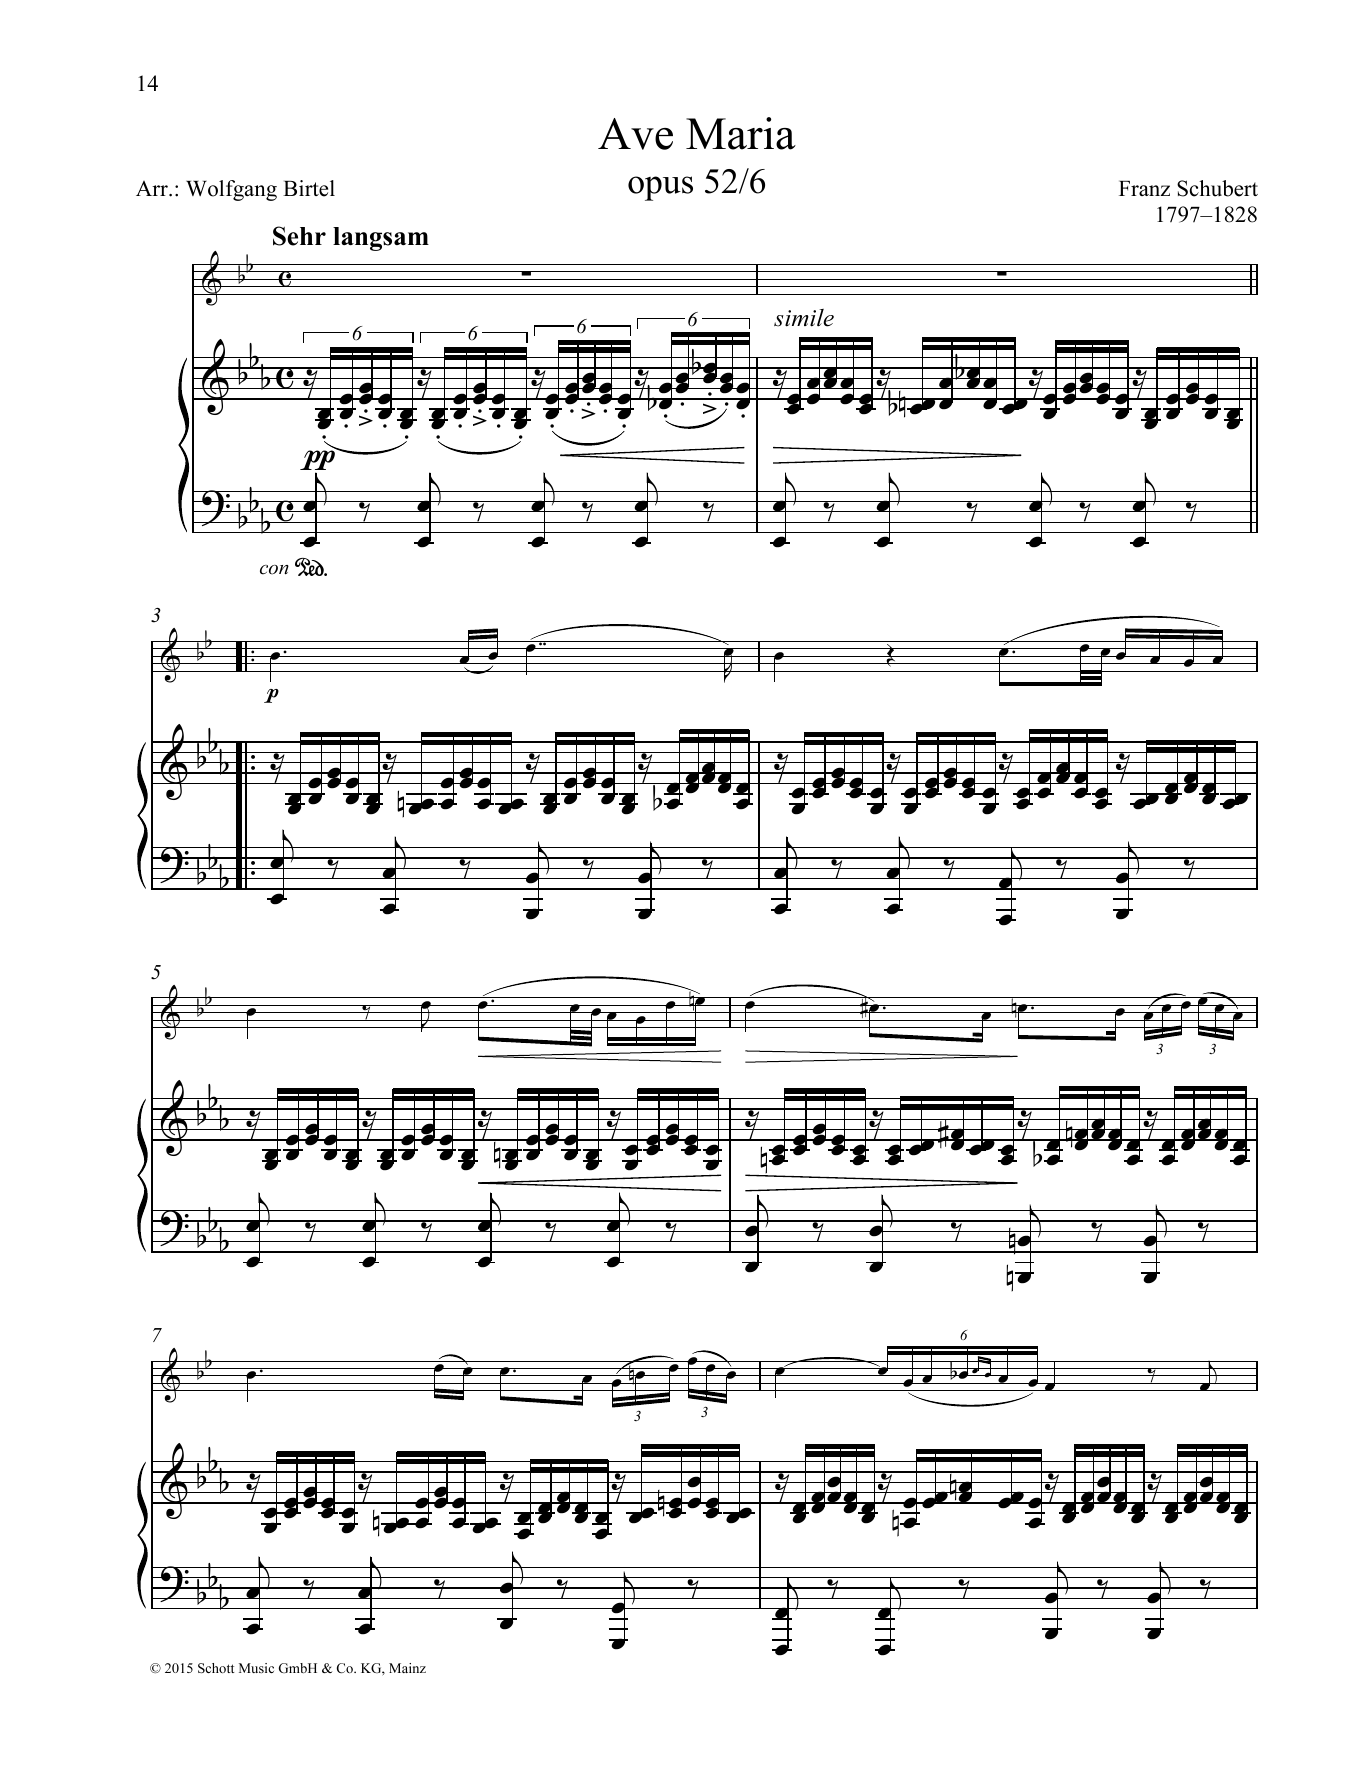 Download Franz Schubert Ave Maria Sheet Music